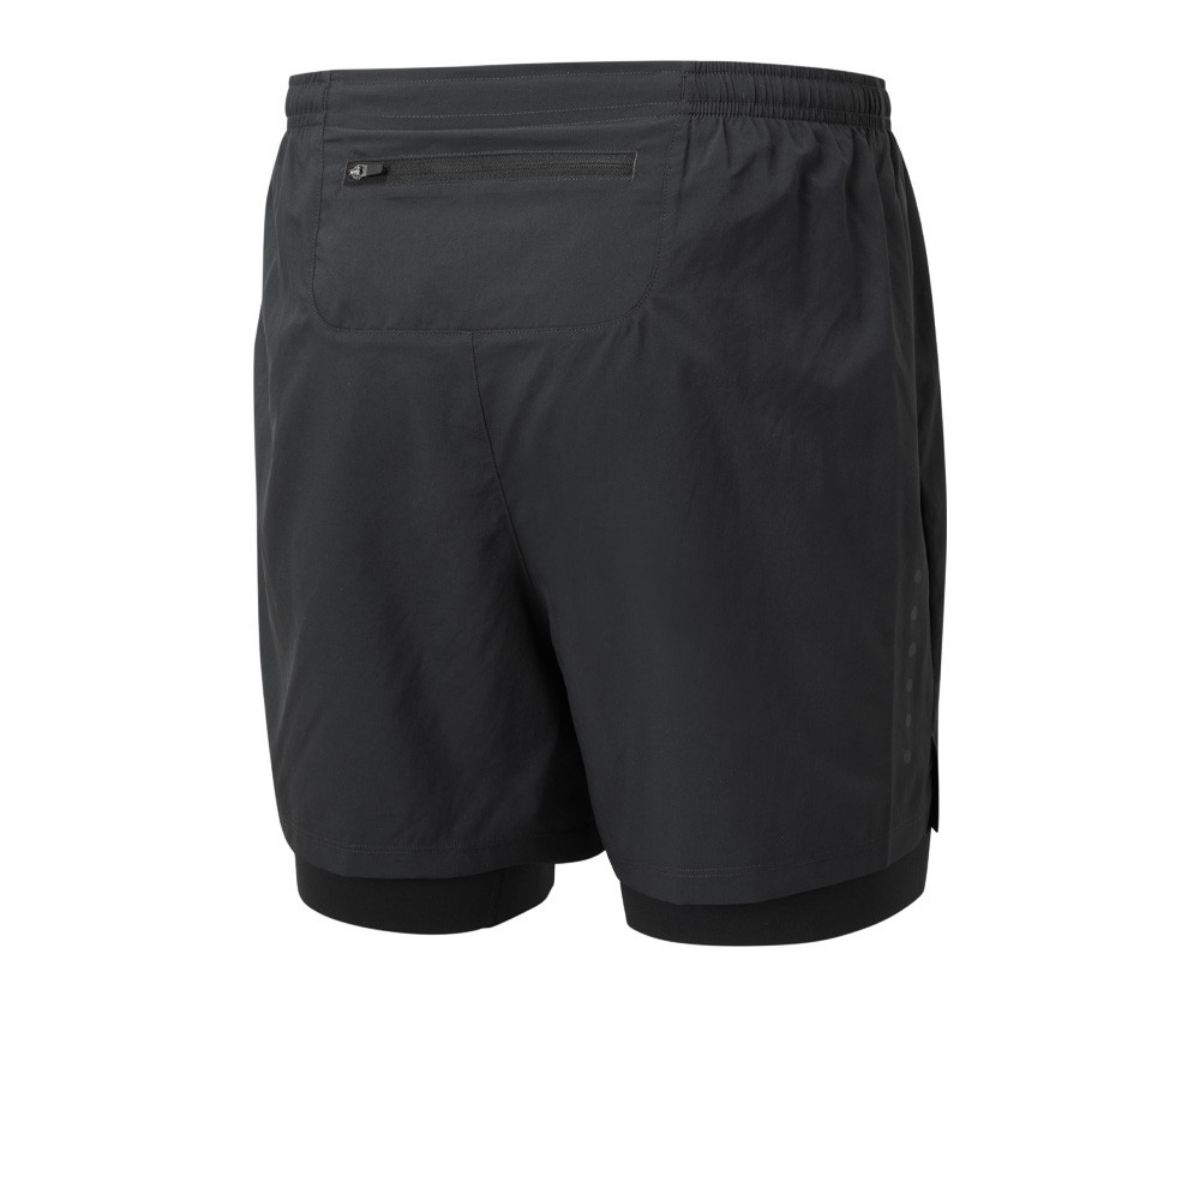 ron_hill_core_twin_shorts_black_løpeshorts